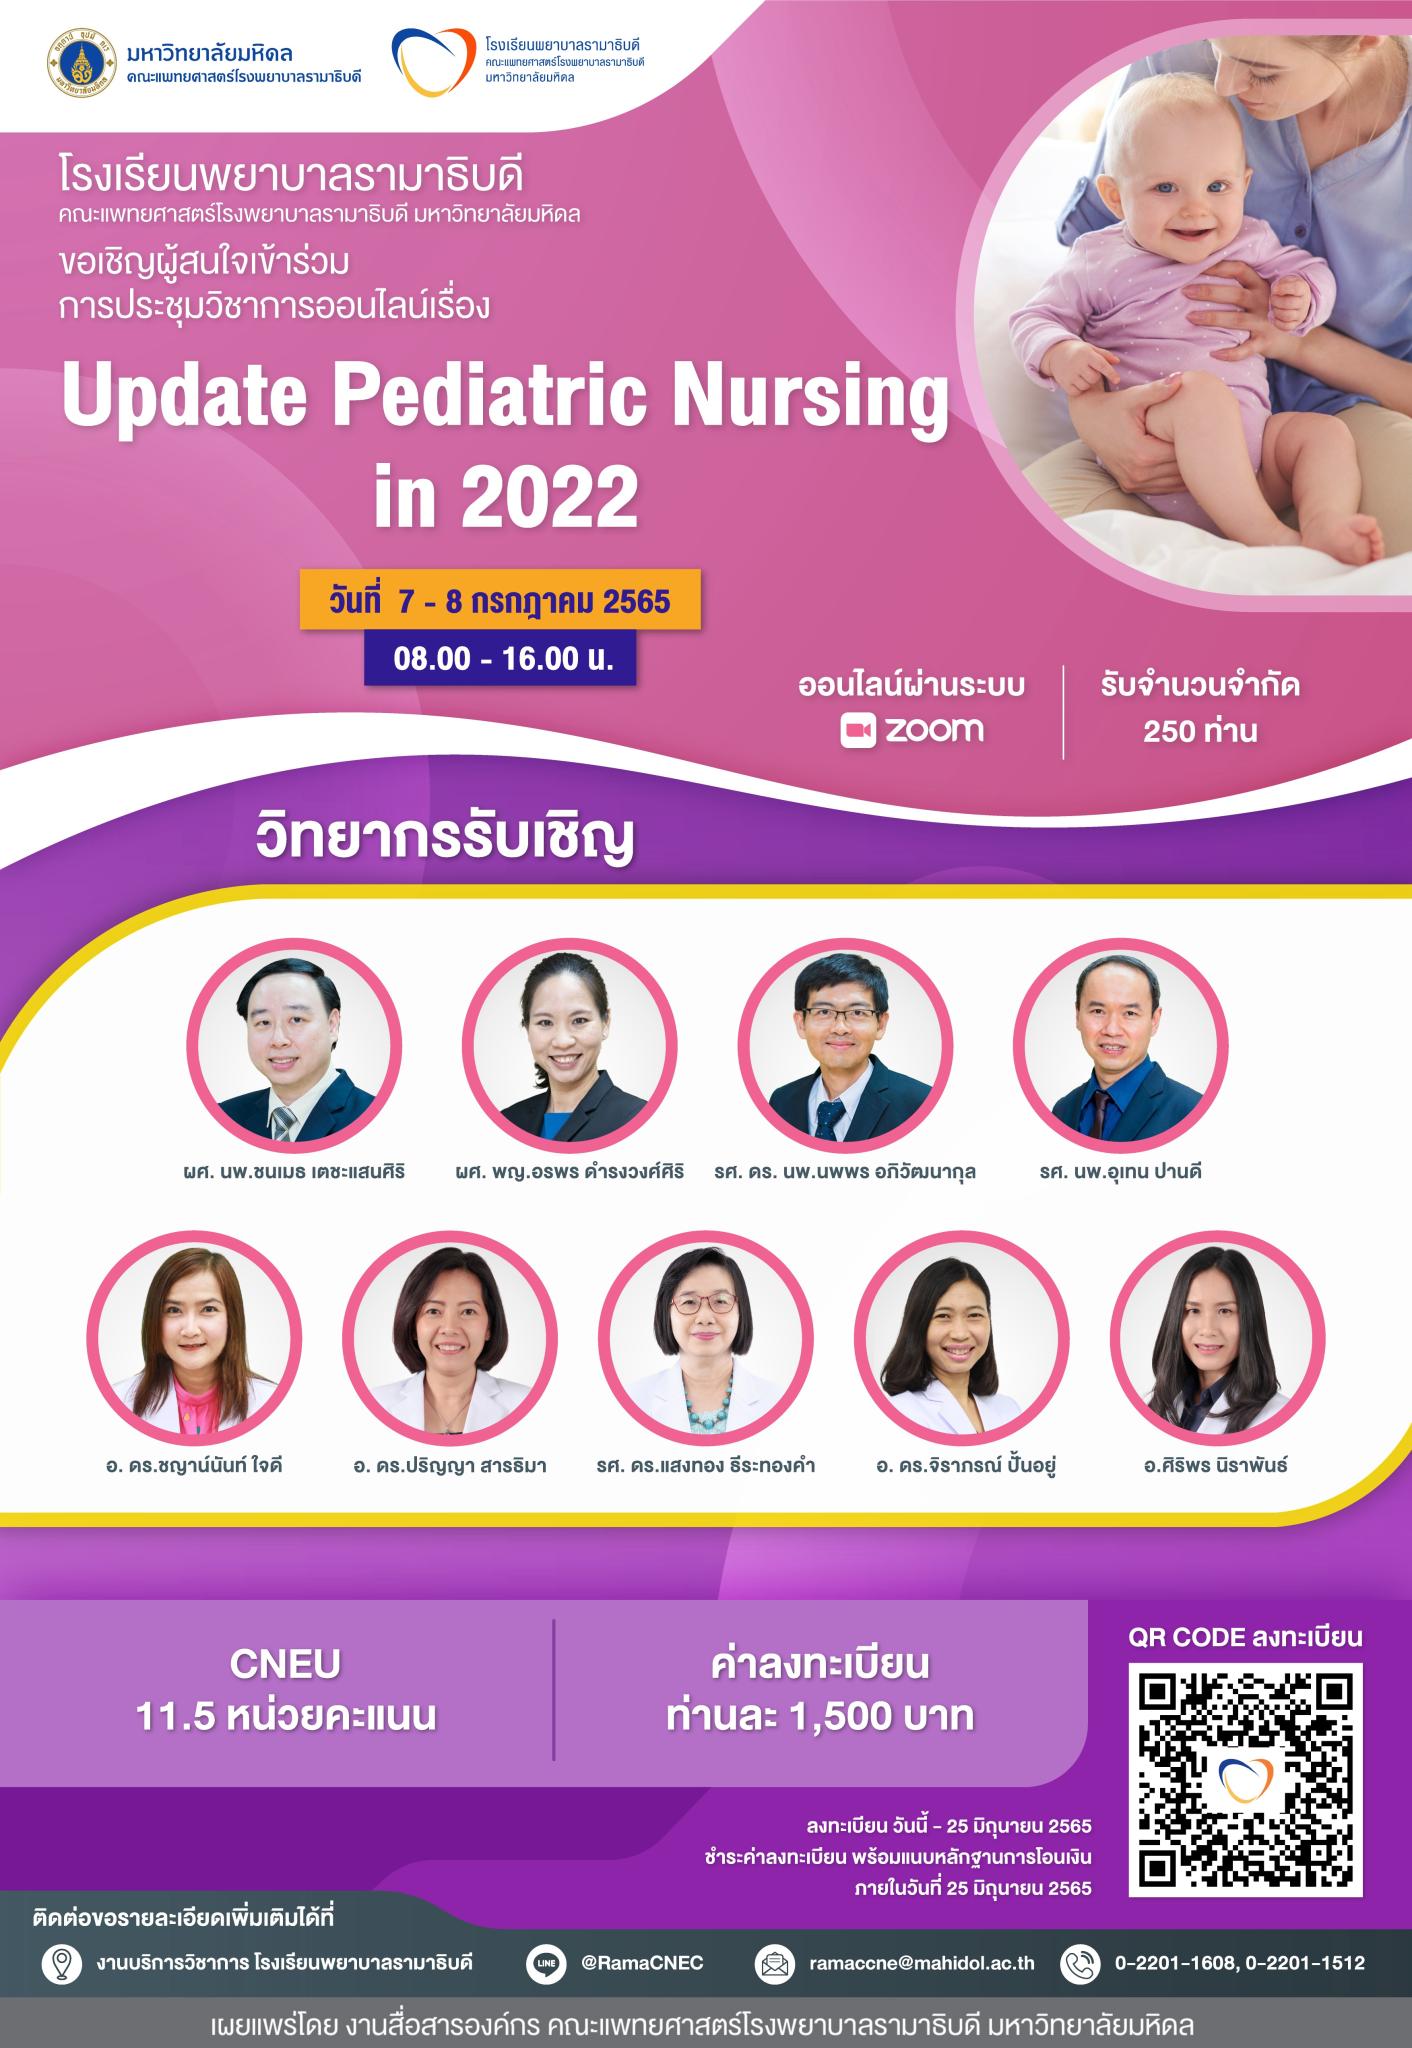 Update Pediatric Nursing in 2022